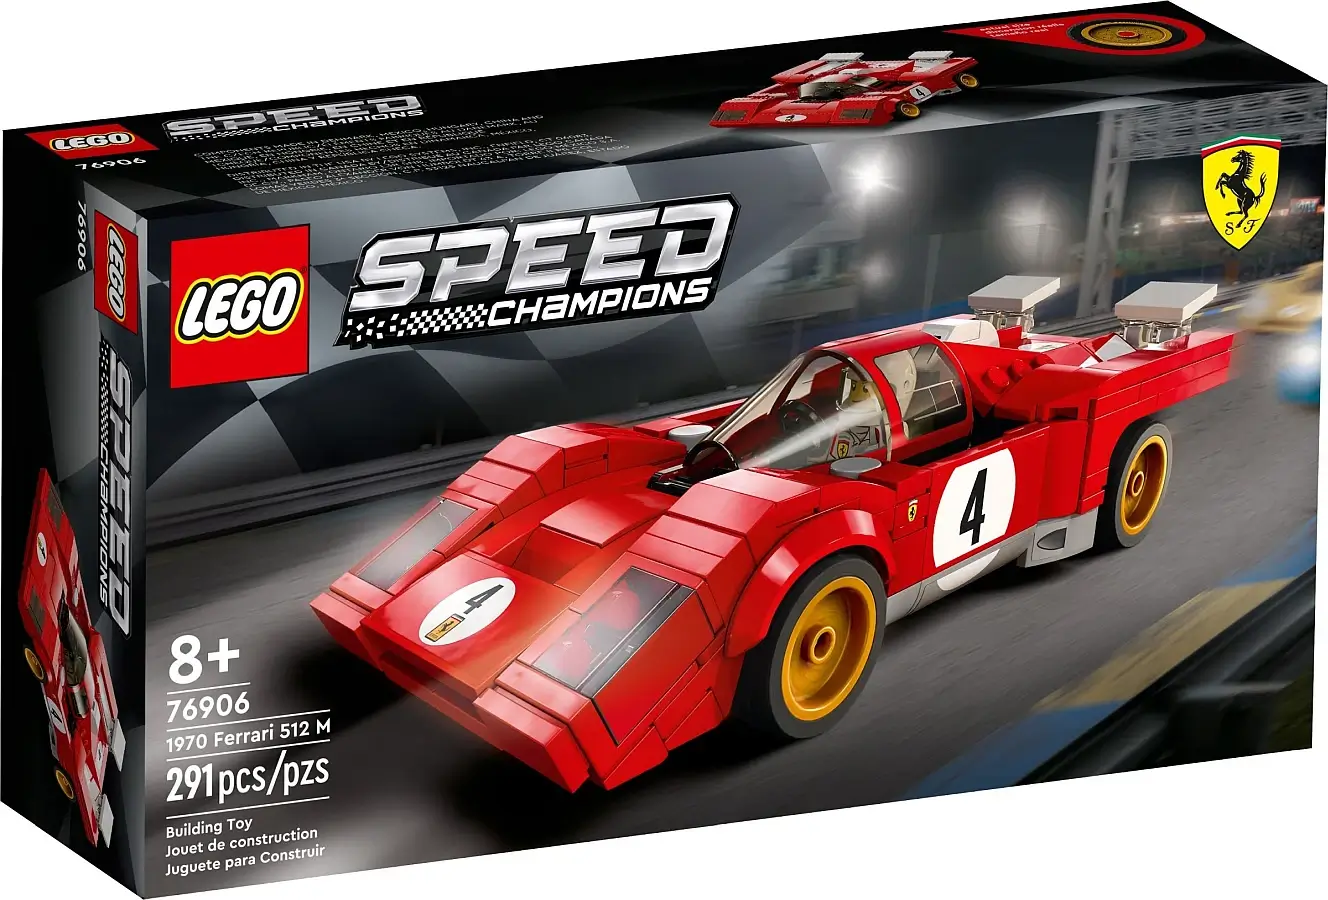 Pudełko zestawu 76906 z serii LEGO® Speed Champions – Ferrari 512 M